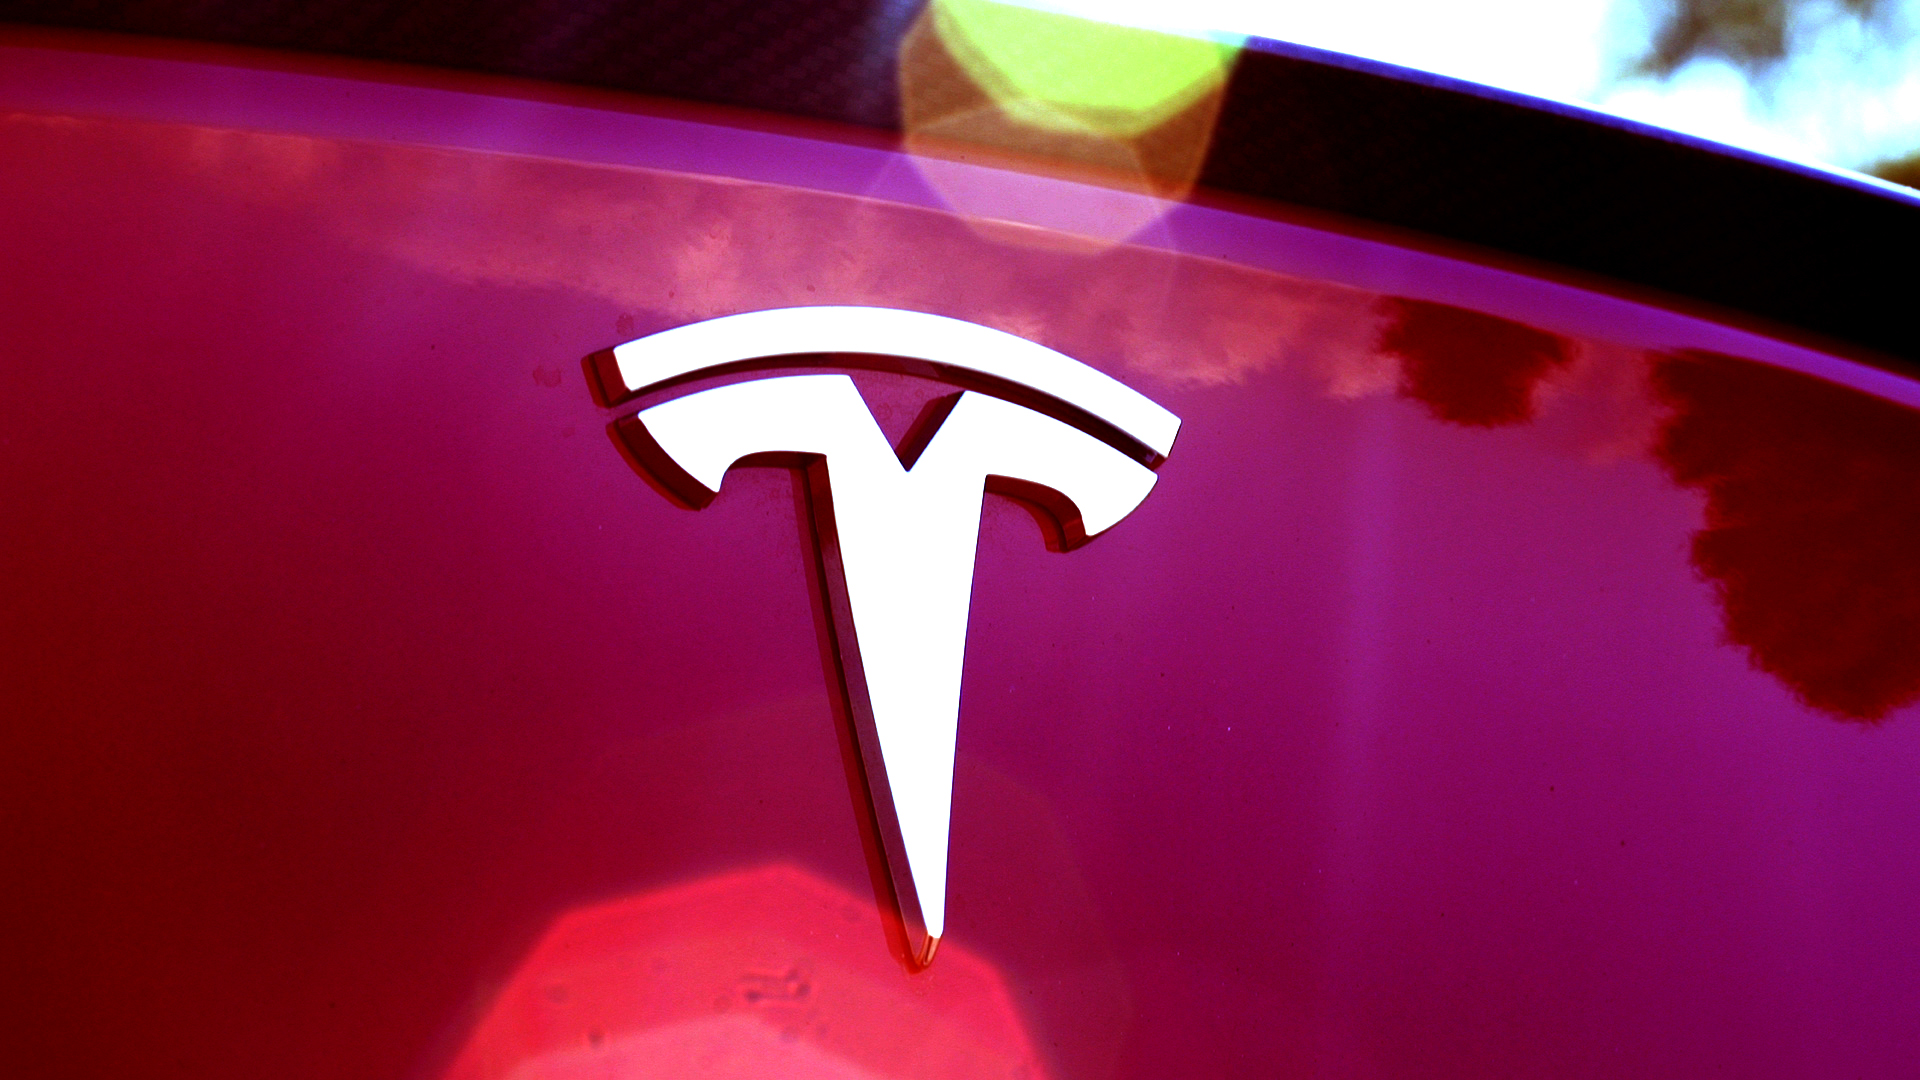 Tesla Ends $1,000 Referral Credit Program